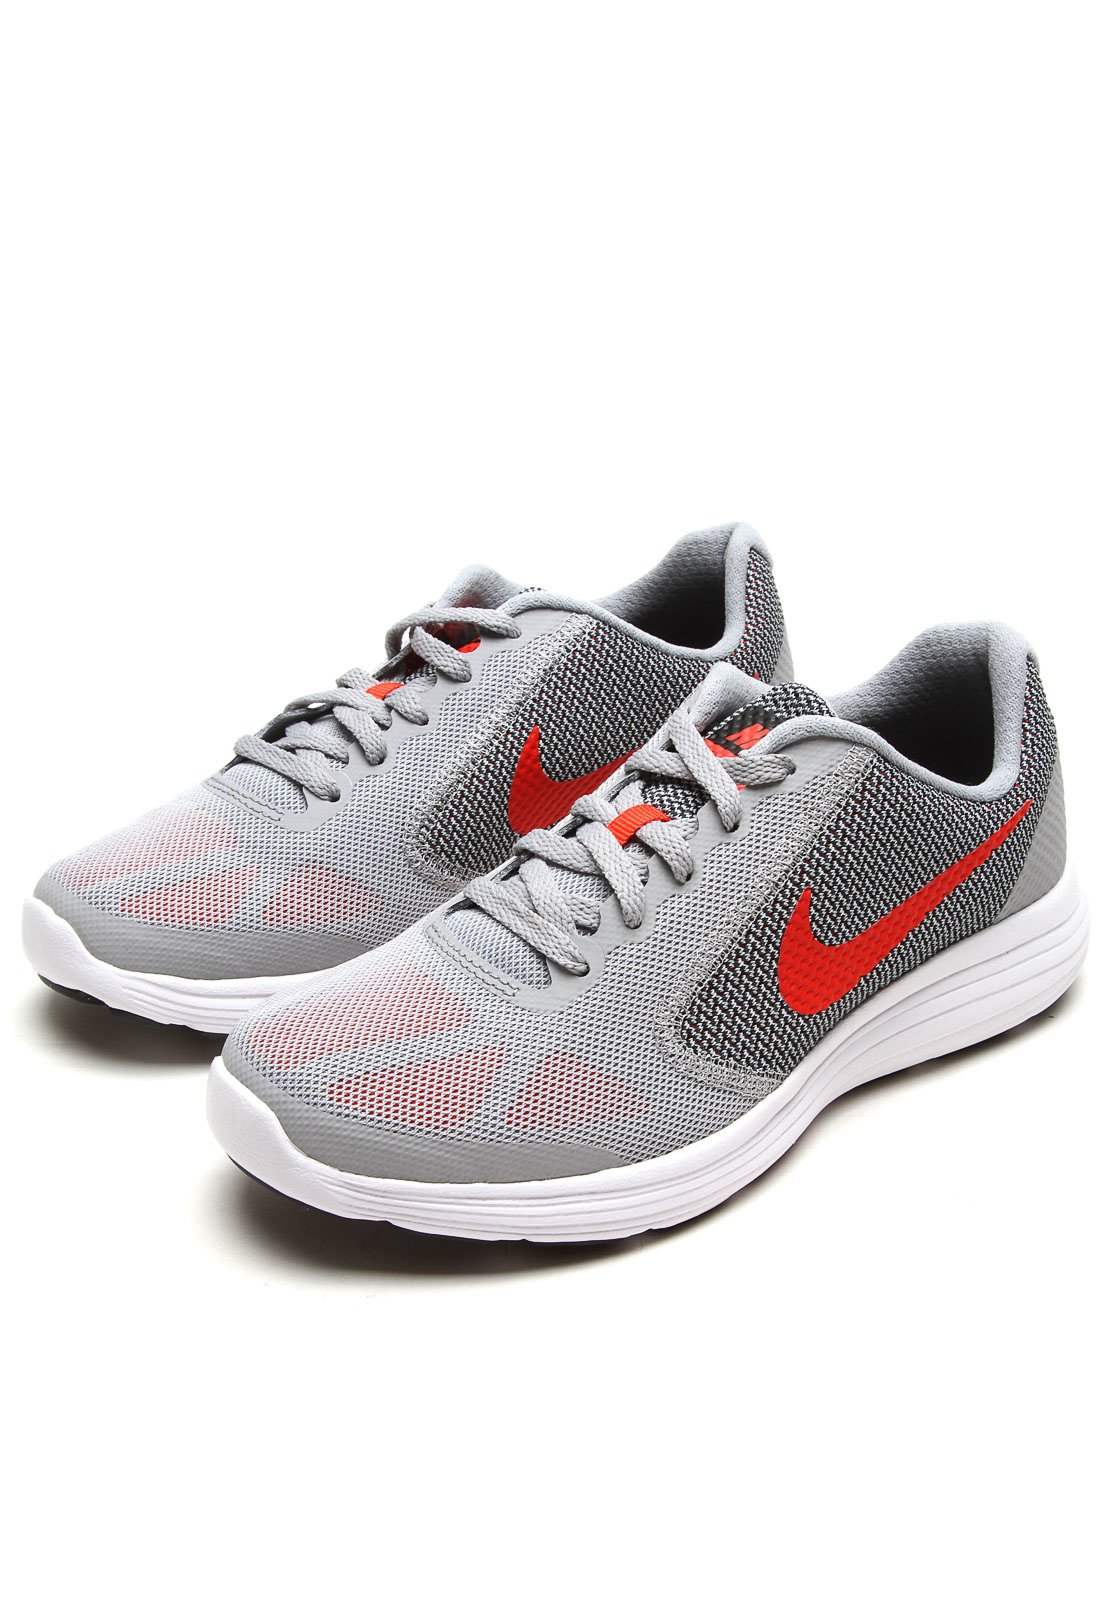 Tênis Nike Revolution 3 Masculino - Cinza e Branco em Promoção no Oferta  Esperta